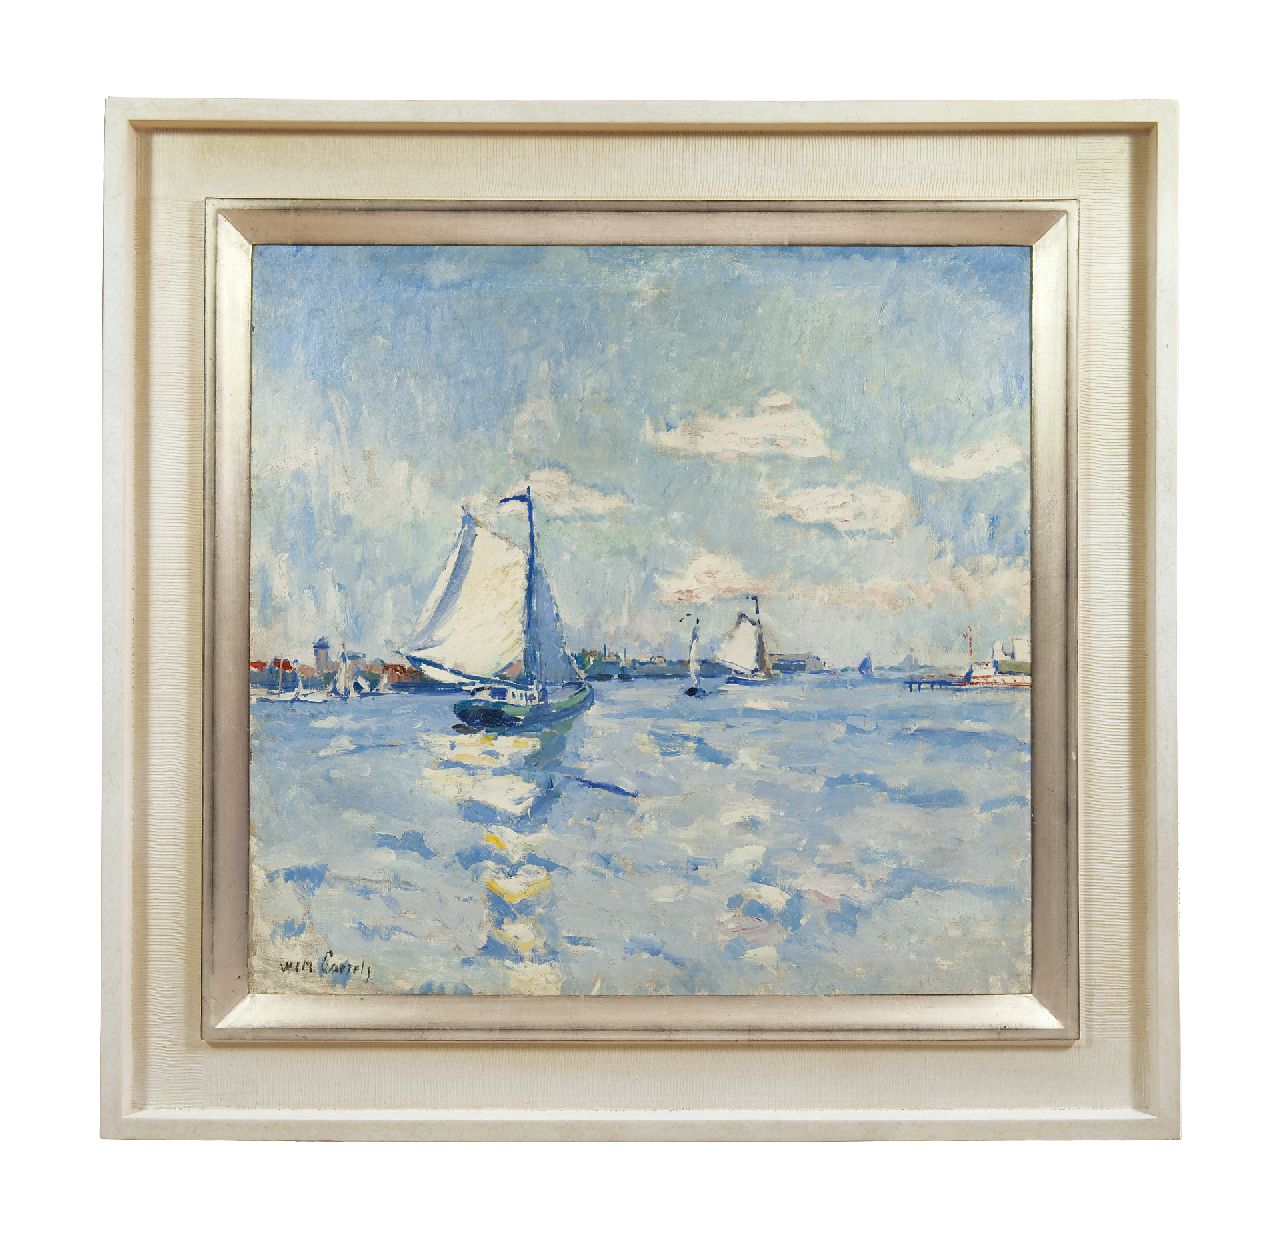 Paerels W.A.  | 'Willem' Adriaan Paerels, Zeilschepen op een rivier, olieverf op doek 71,3 x 74,3 cm, gesigneerd linksonder en vermoedelijk te dateren ca. 1915